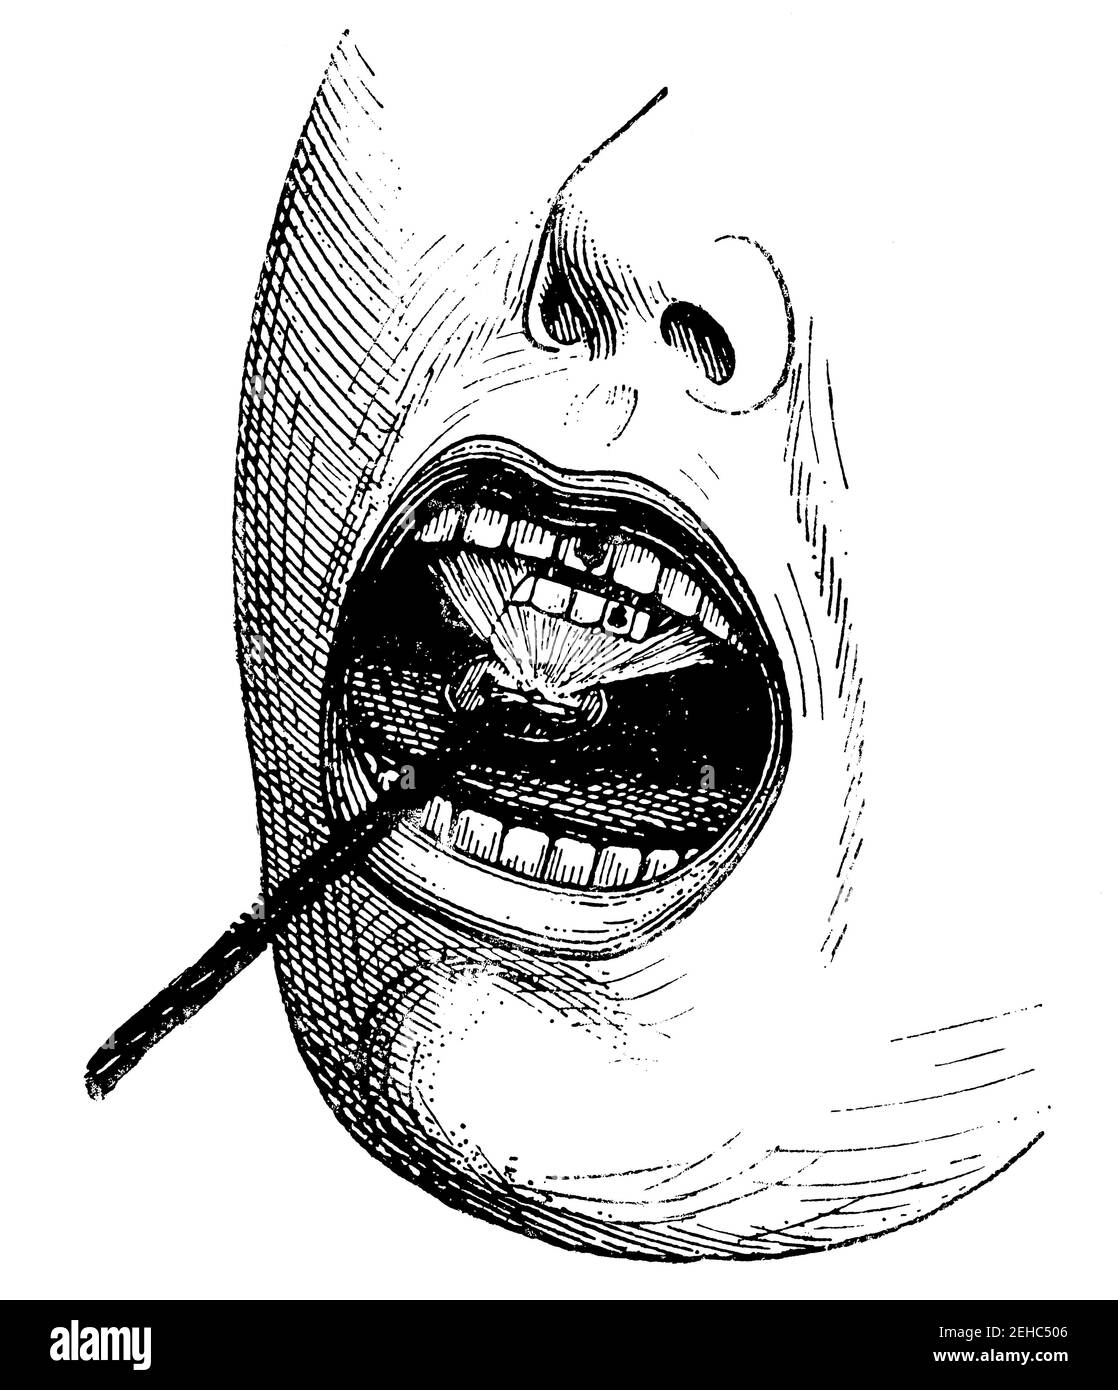 Beleuchtung der Mundhöhle durch elektrisches Licht. Illustration des 19th. Jahrhunderts. Deutschland. Weißer Hintergrund. Stockfoto